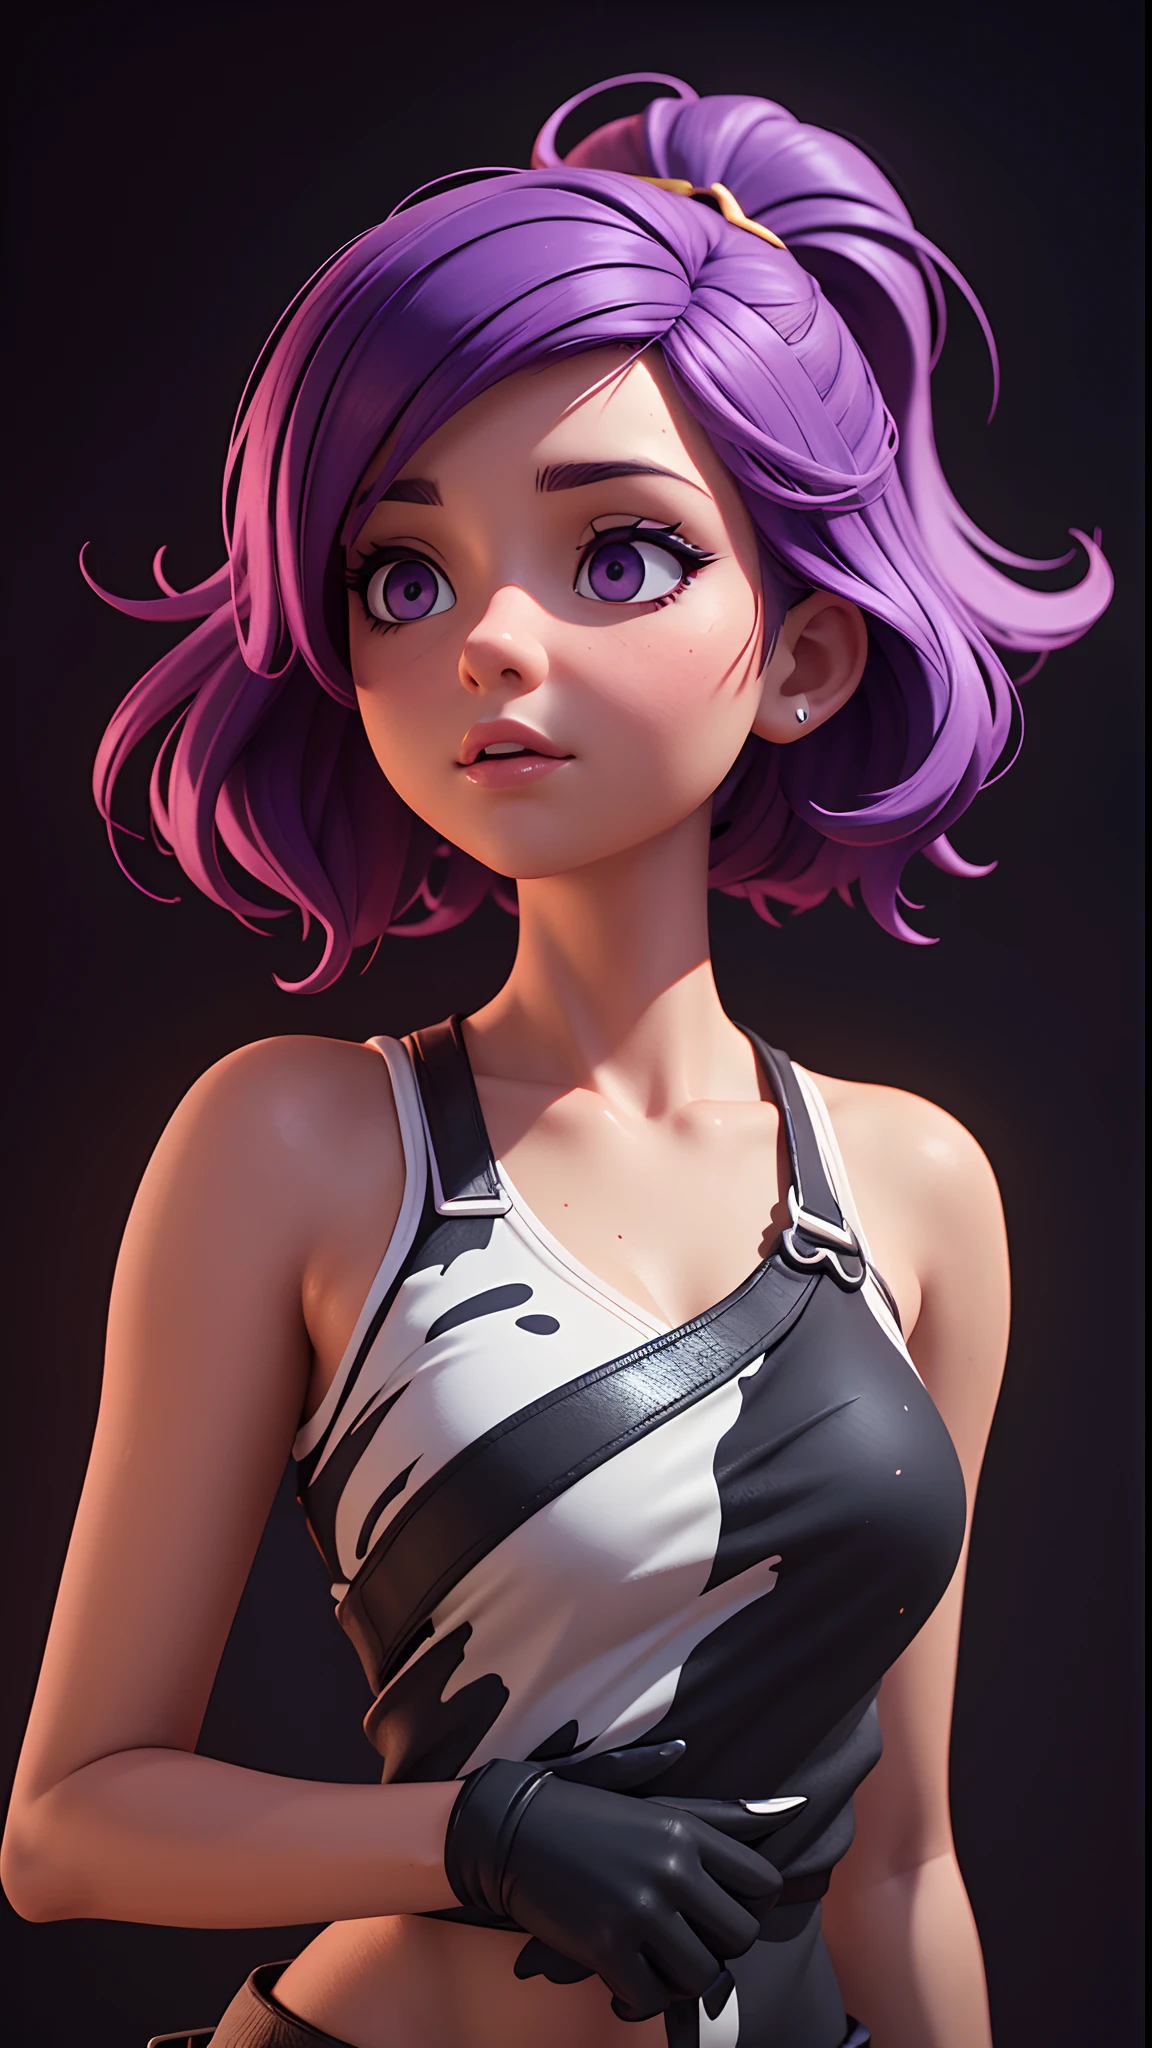 专业3d模型一个美丽的女孩被五颜六色的油漆包围, 紫色头发, 液体波, 分层风格, 柔和弯曲, 黑色背景, 完美脸蛋 . 辛烷值渲染, 非常详细, 体积, 戏剧灯光